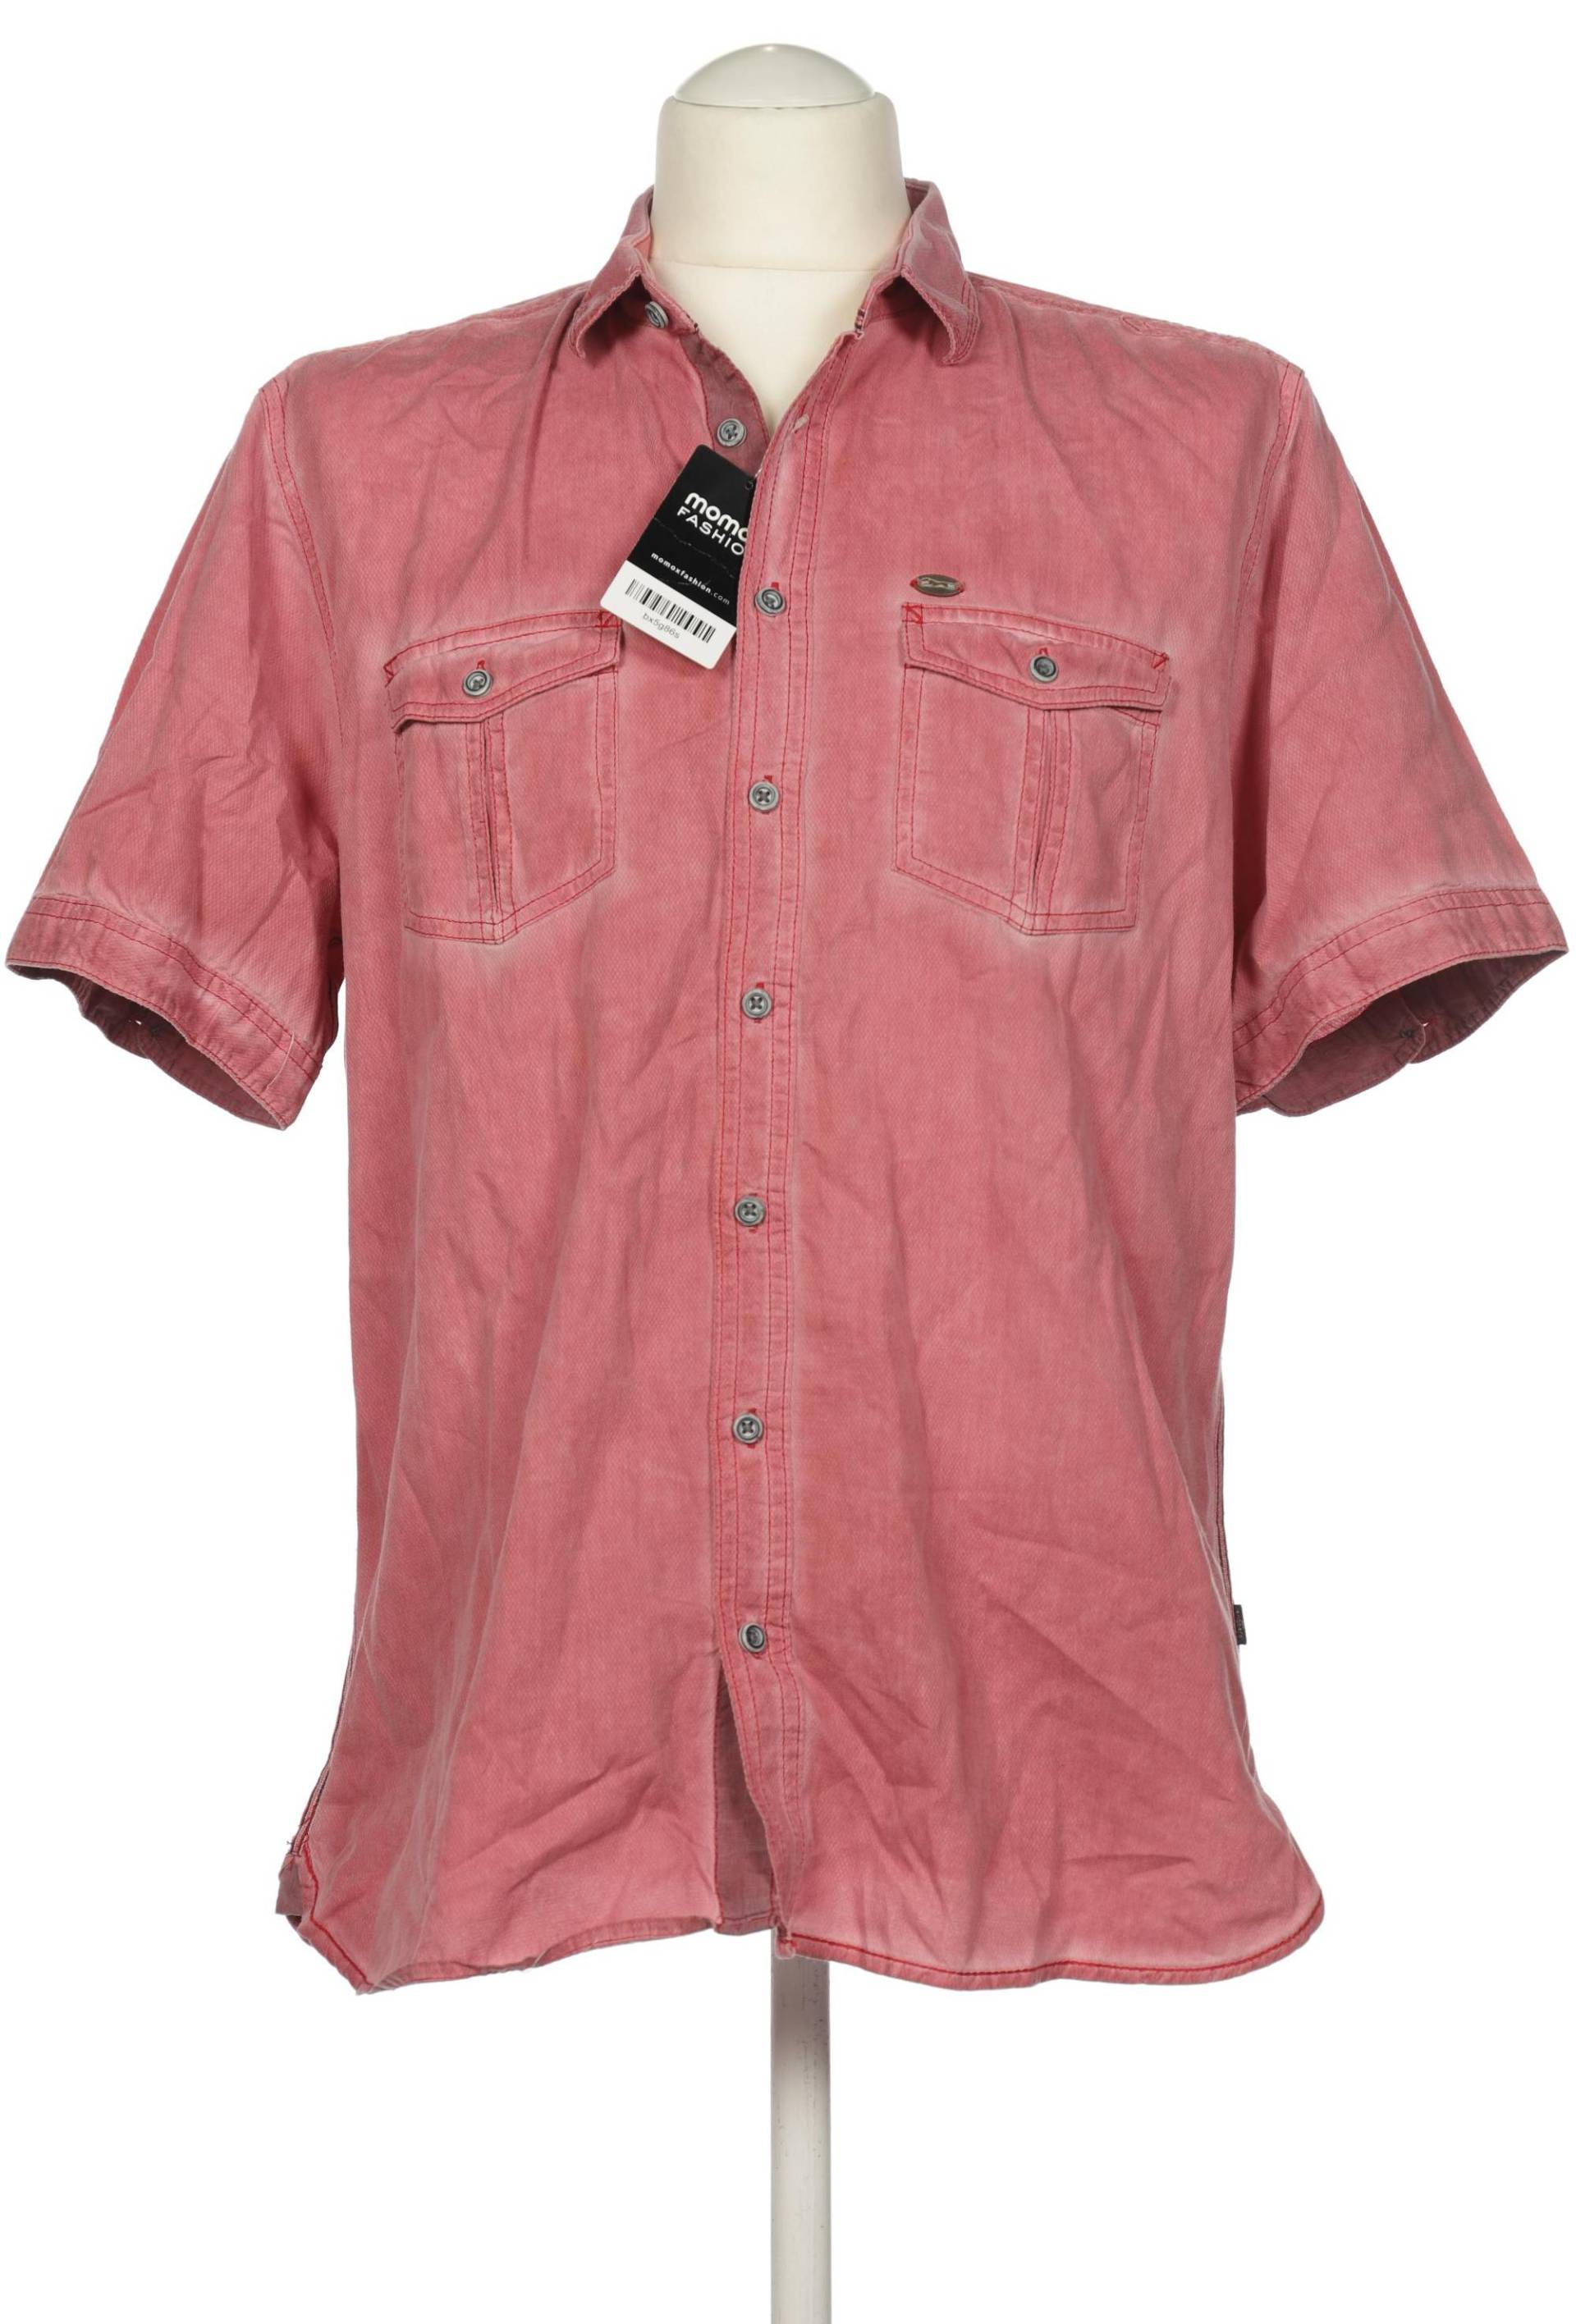 engbers Herren Hemd, pink, Gr. 52 von engbers